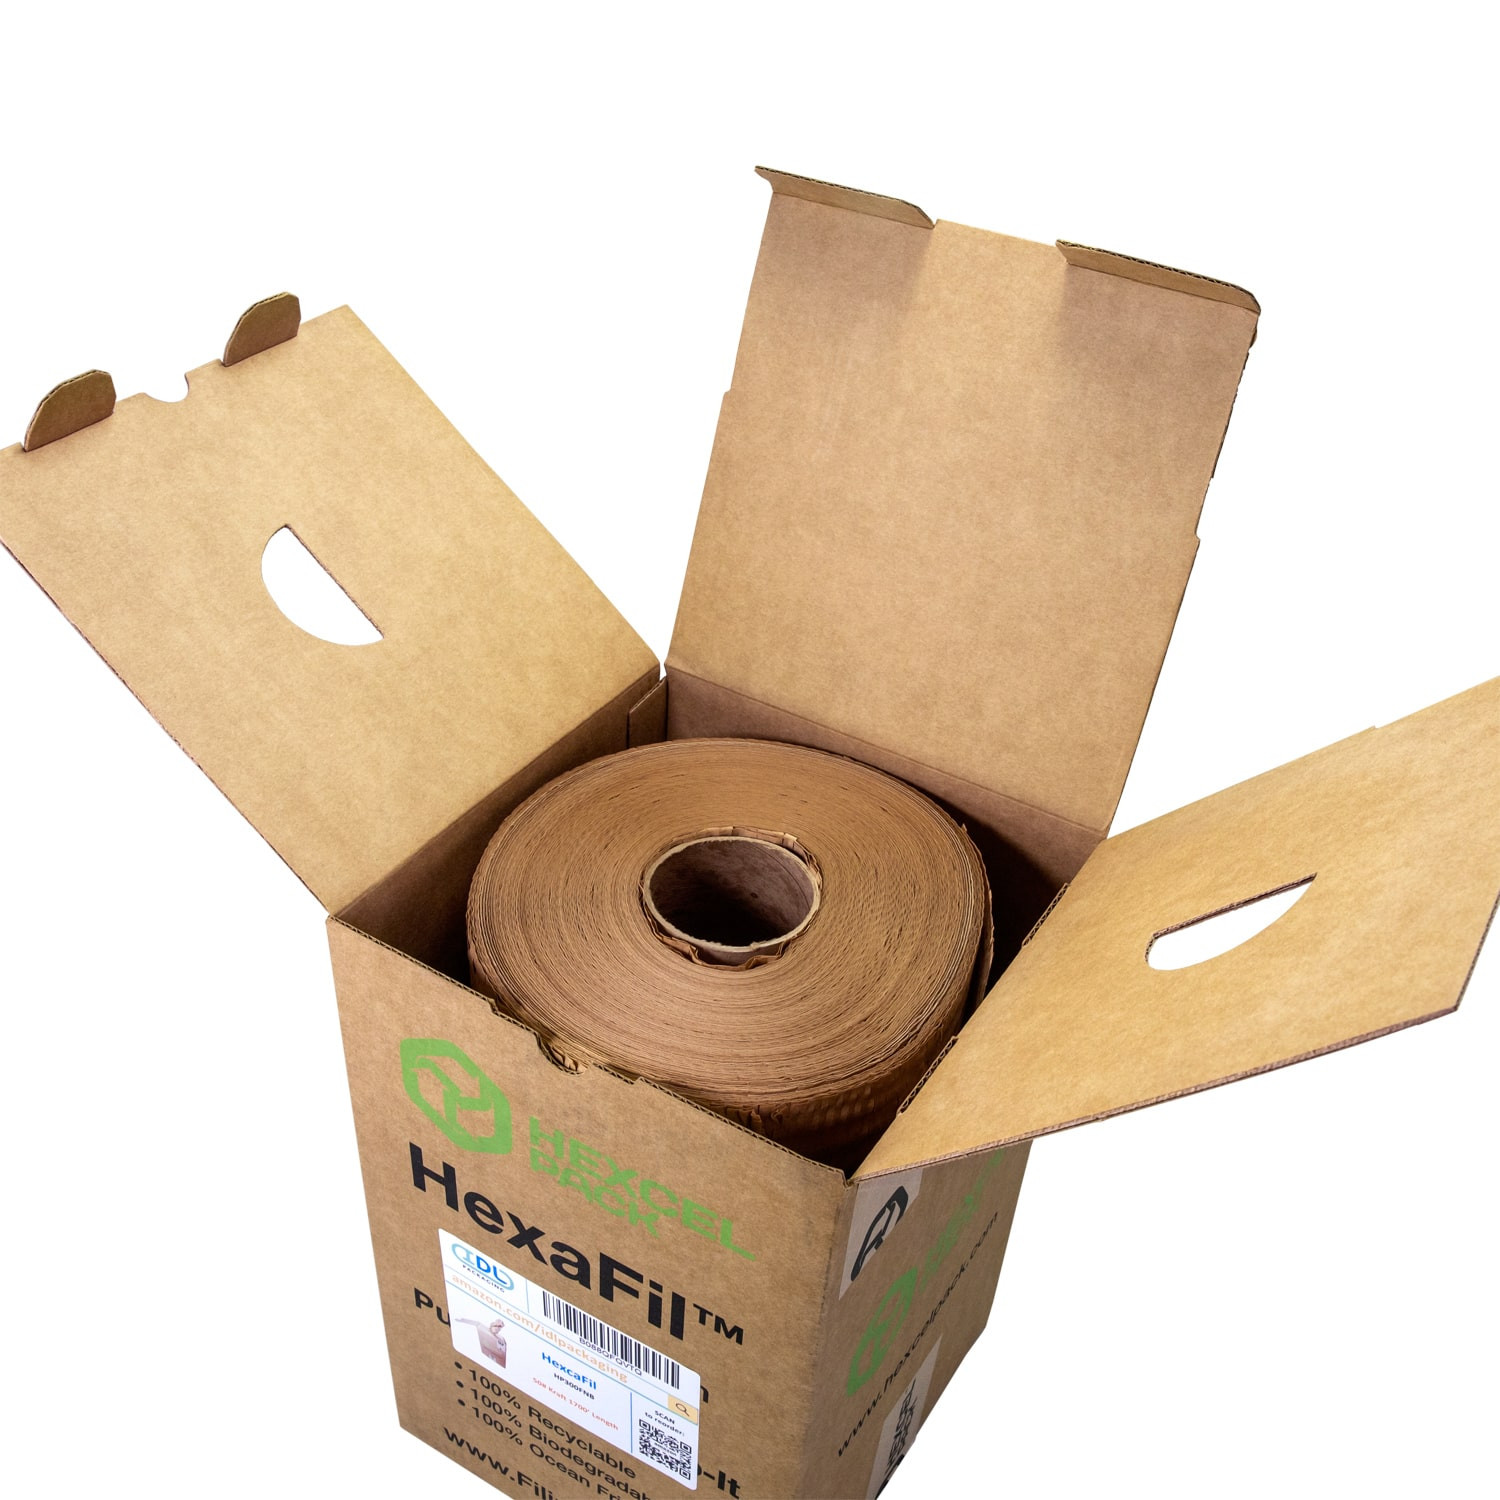 4 Flexi-Hex™ Honeycomb Packing Paper Sleeves, XS, Brown buy in stock in  U.S. in IDL Packaging